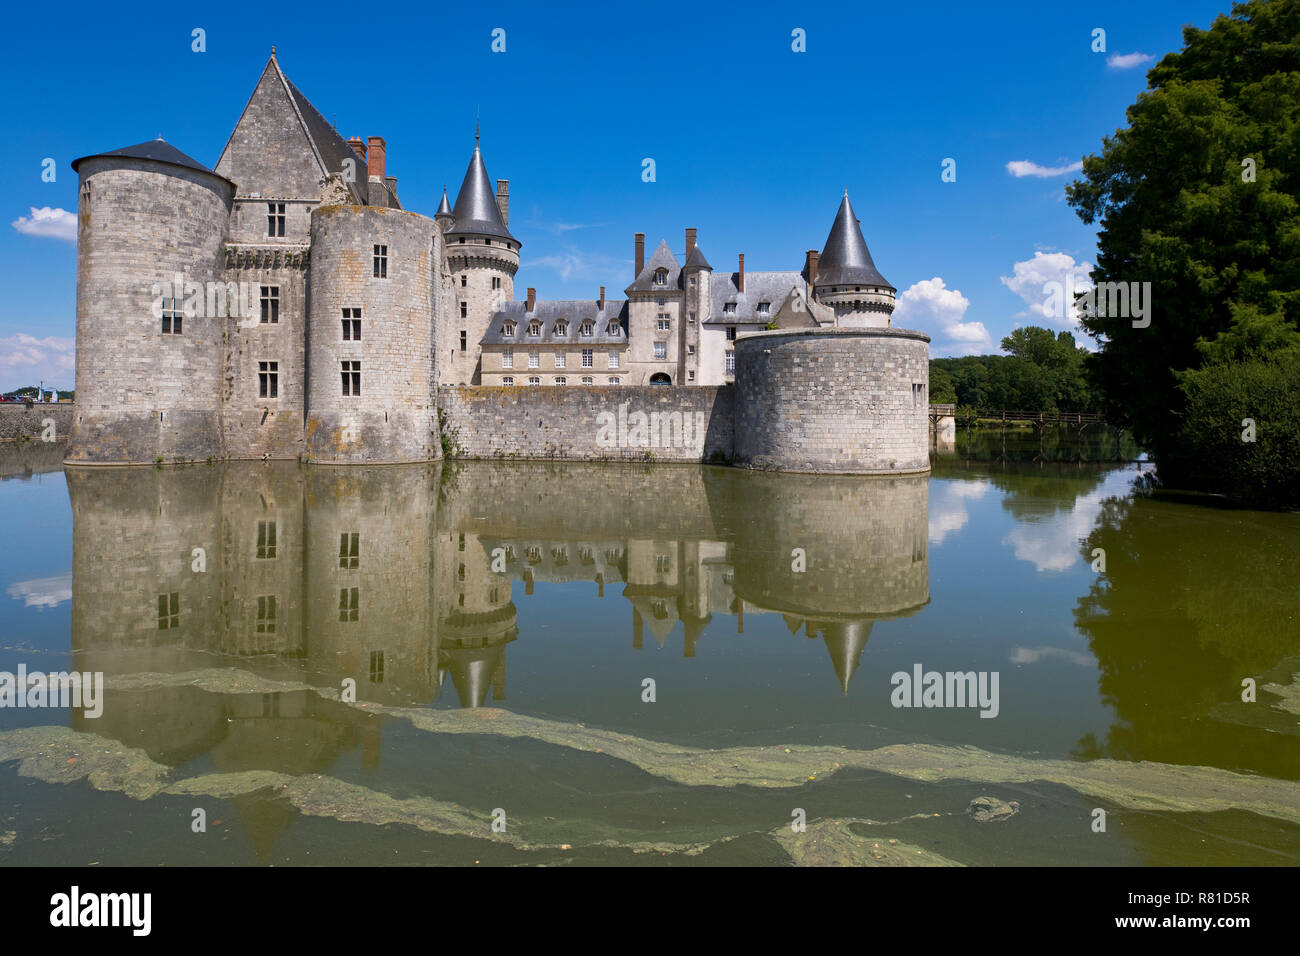 Château de Sully-sur-Loire, Loire Valley, France Stock Photo